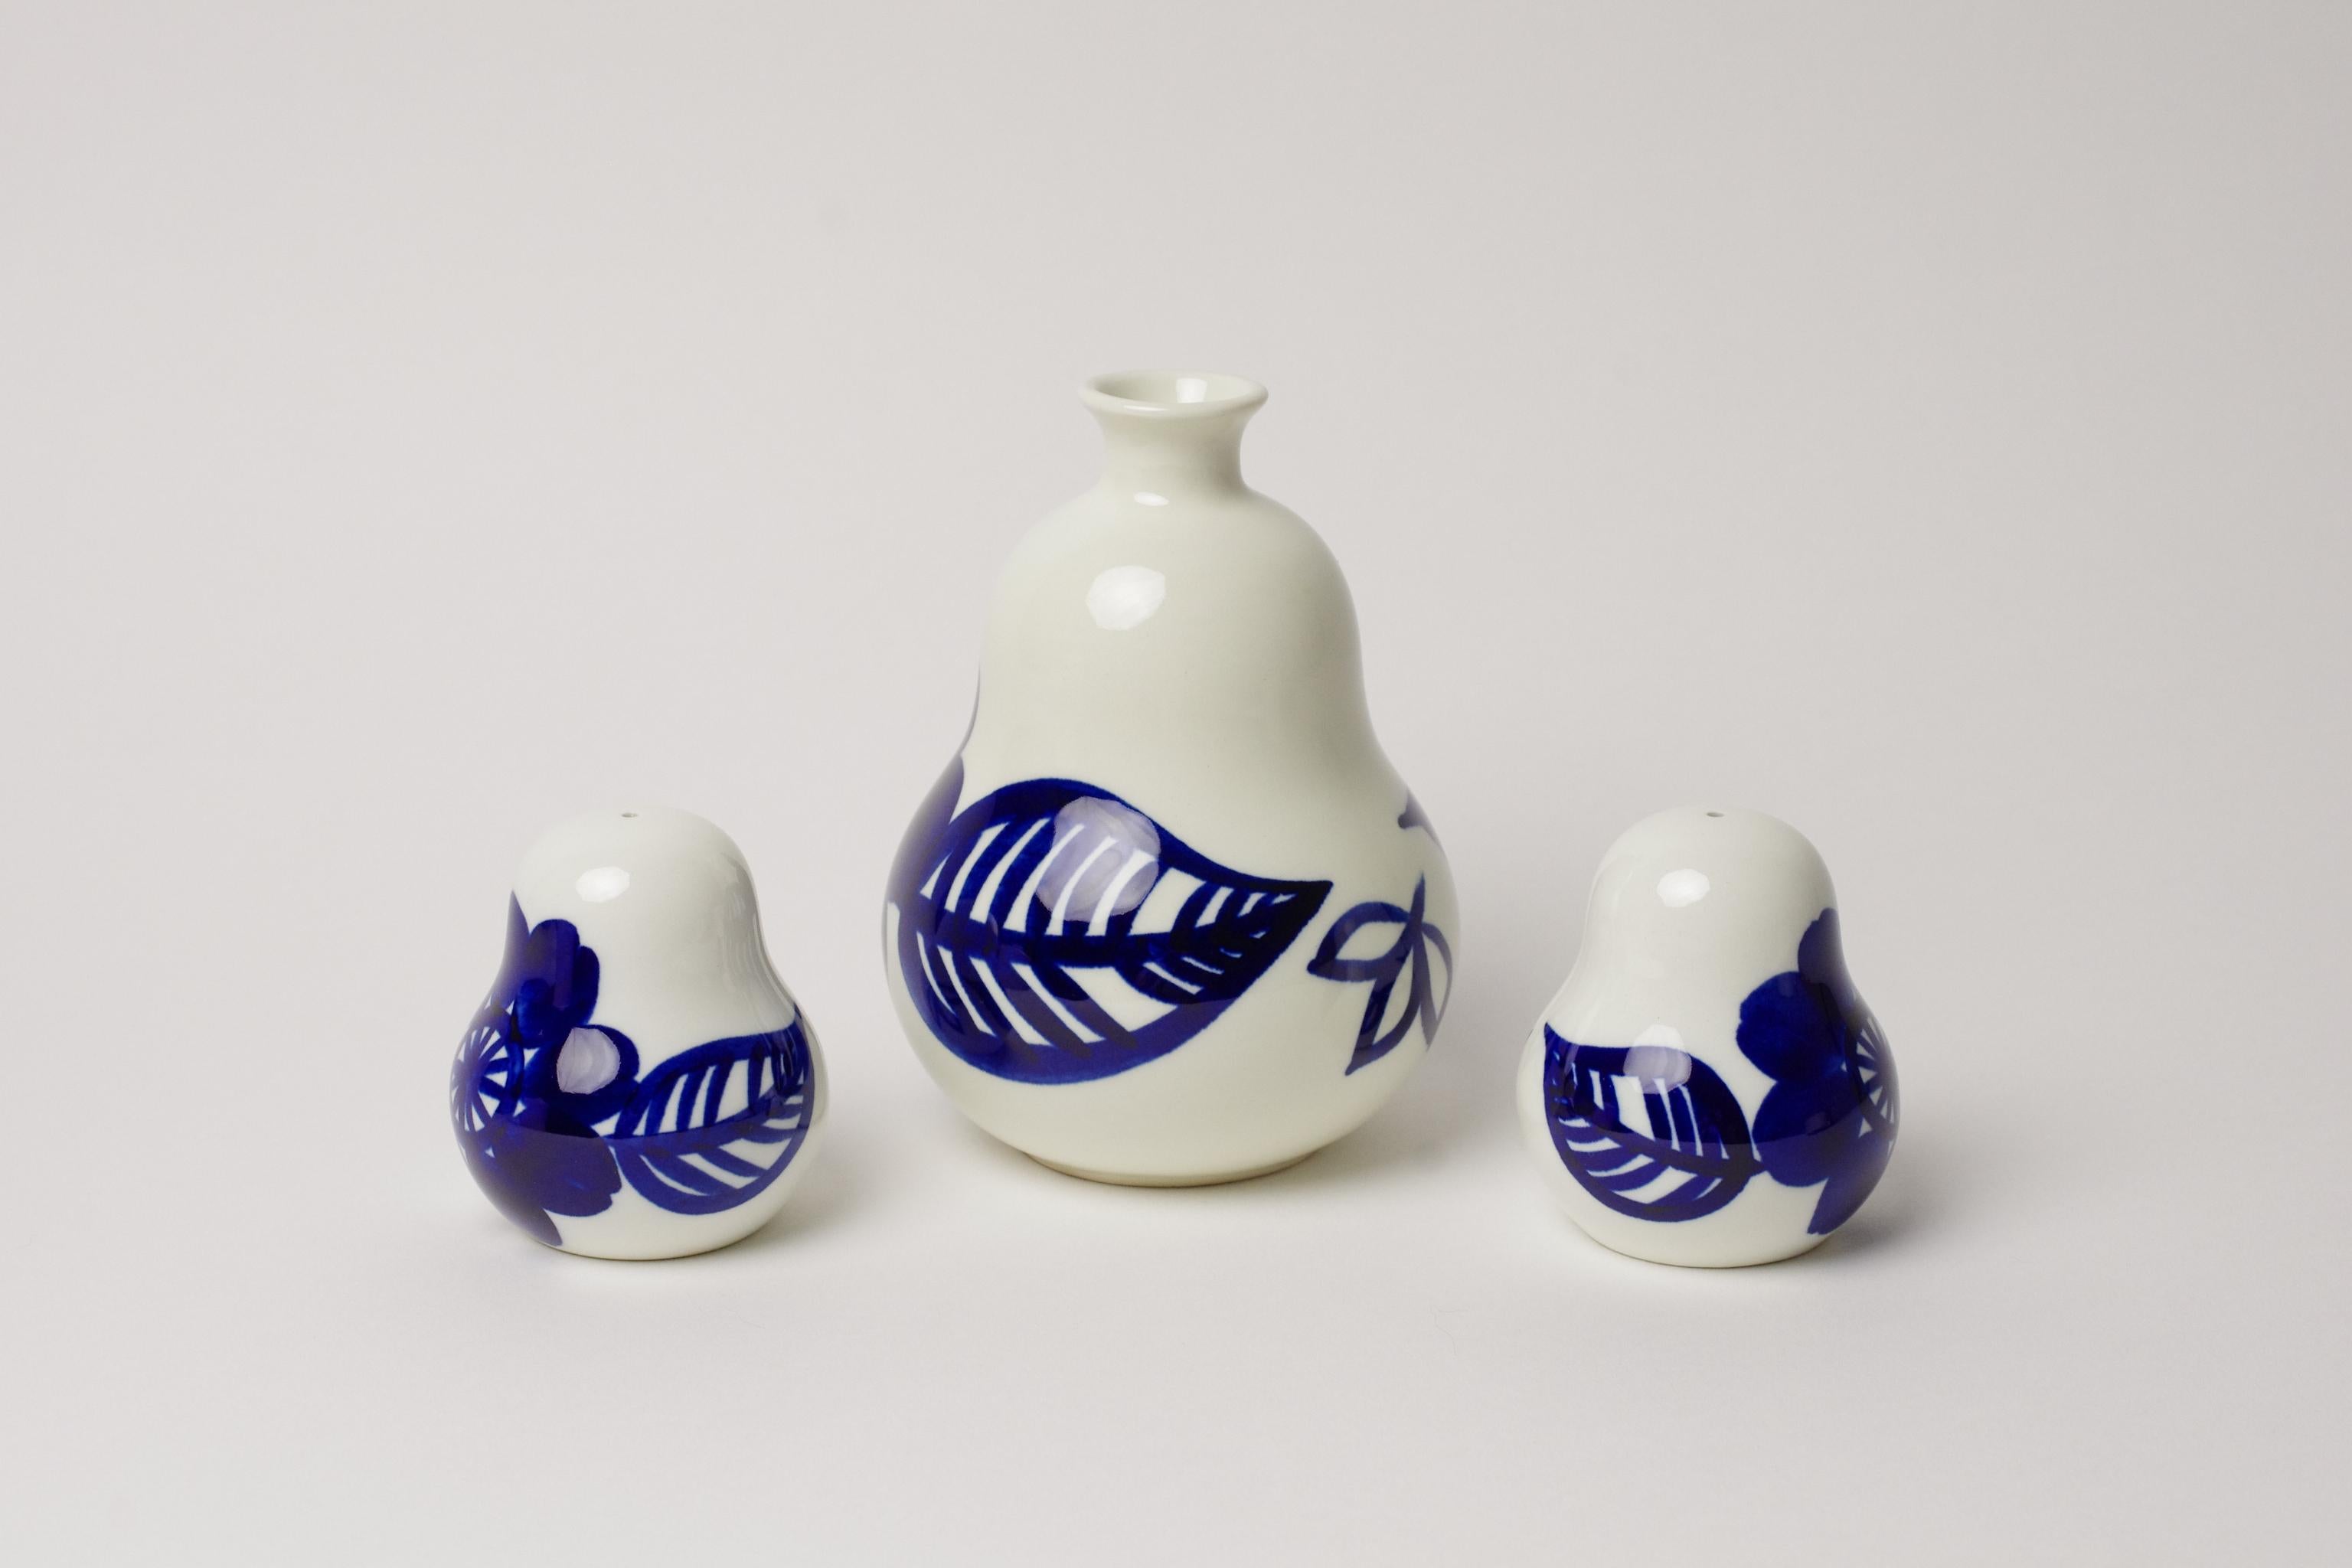 Beschreibung des Produkts:
Wir bieten hier zwei Salzstreuer und eine Vase an, die von Gunvor Olin-Grönqvist für Arabia Finland entworfen wurden. Alle drei Artikel sind Teil der Köökki - Serie, die aus weiteren Artikeln wie Schneidebrettern und